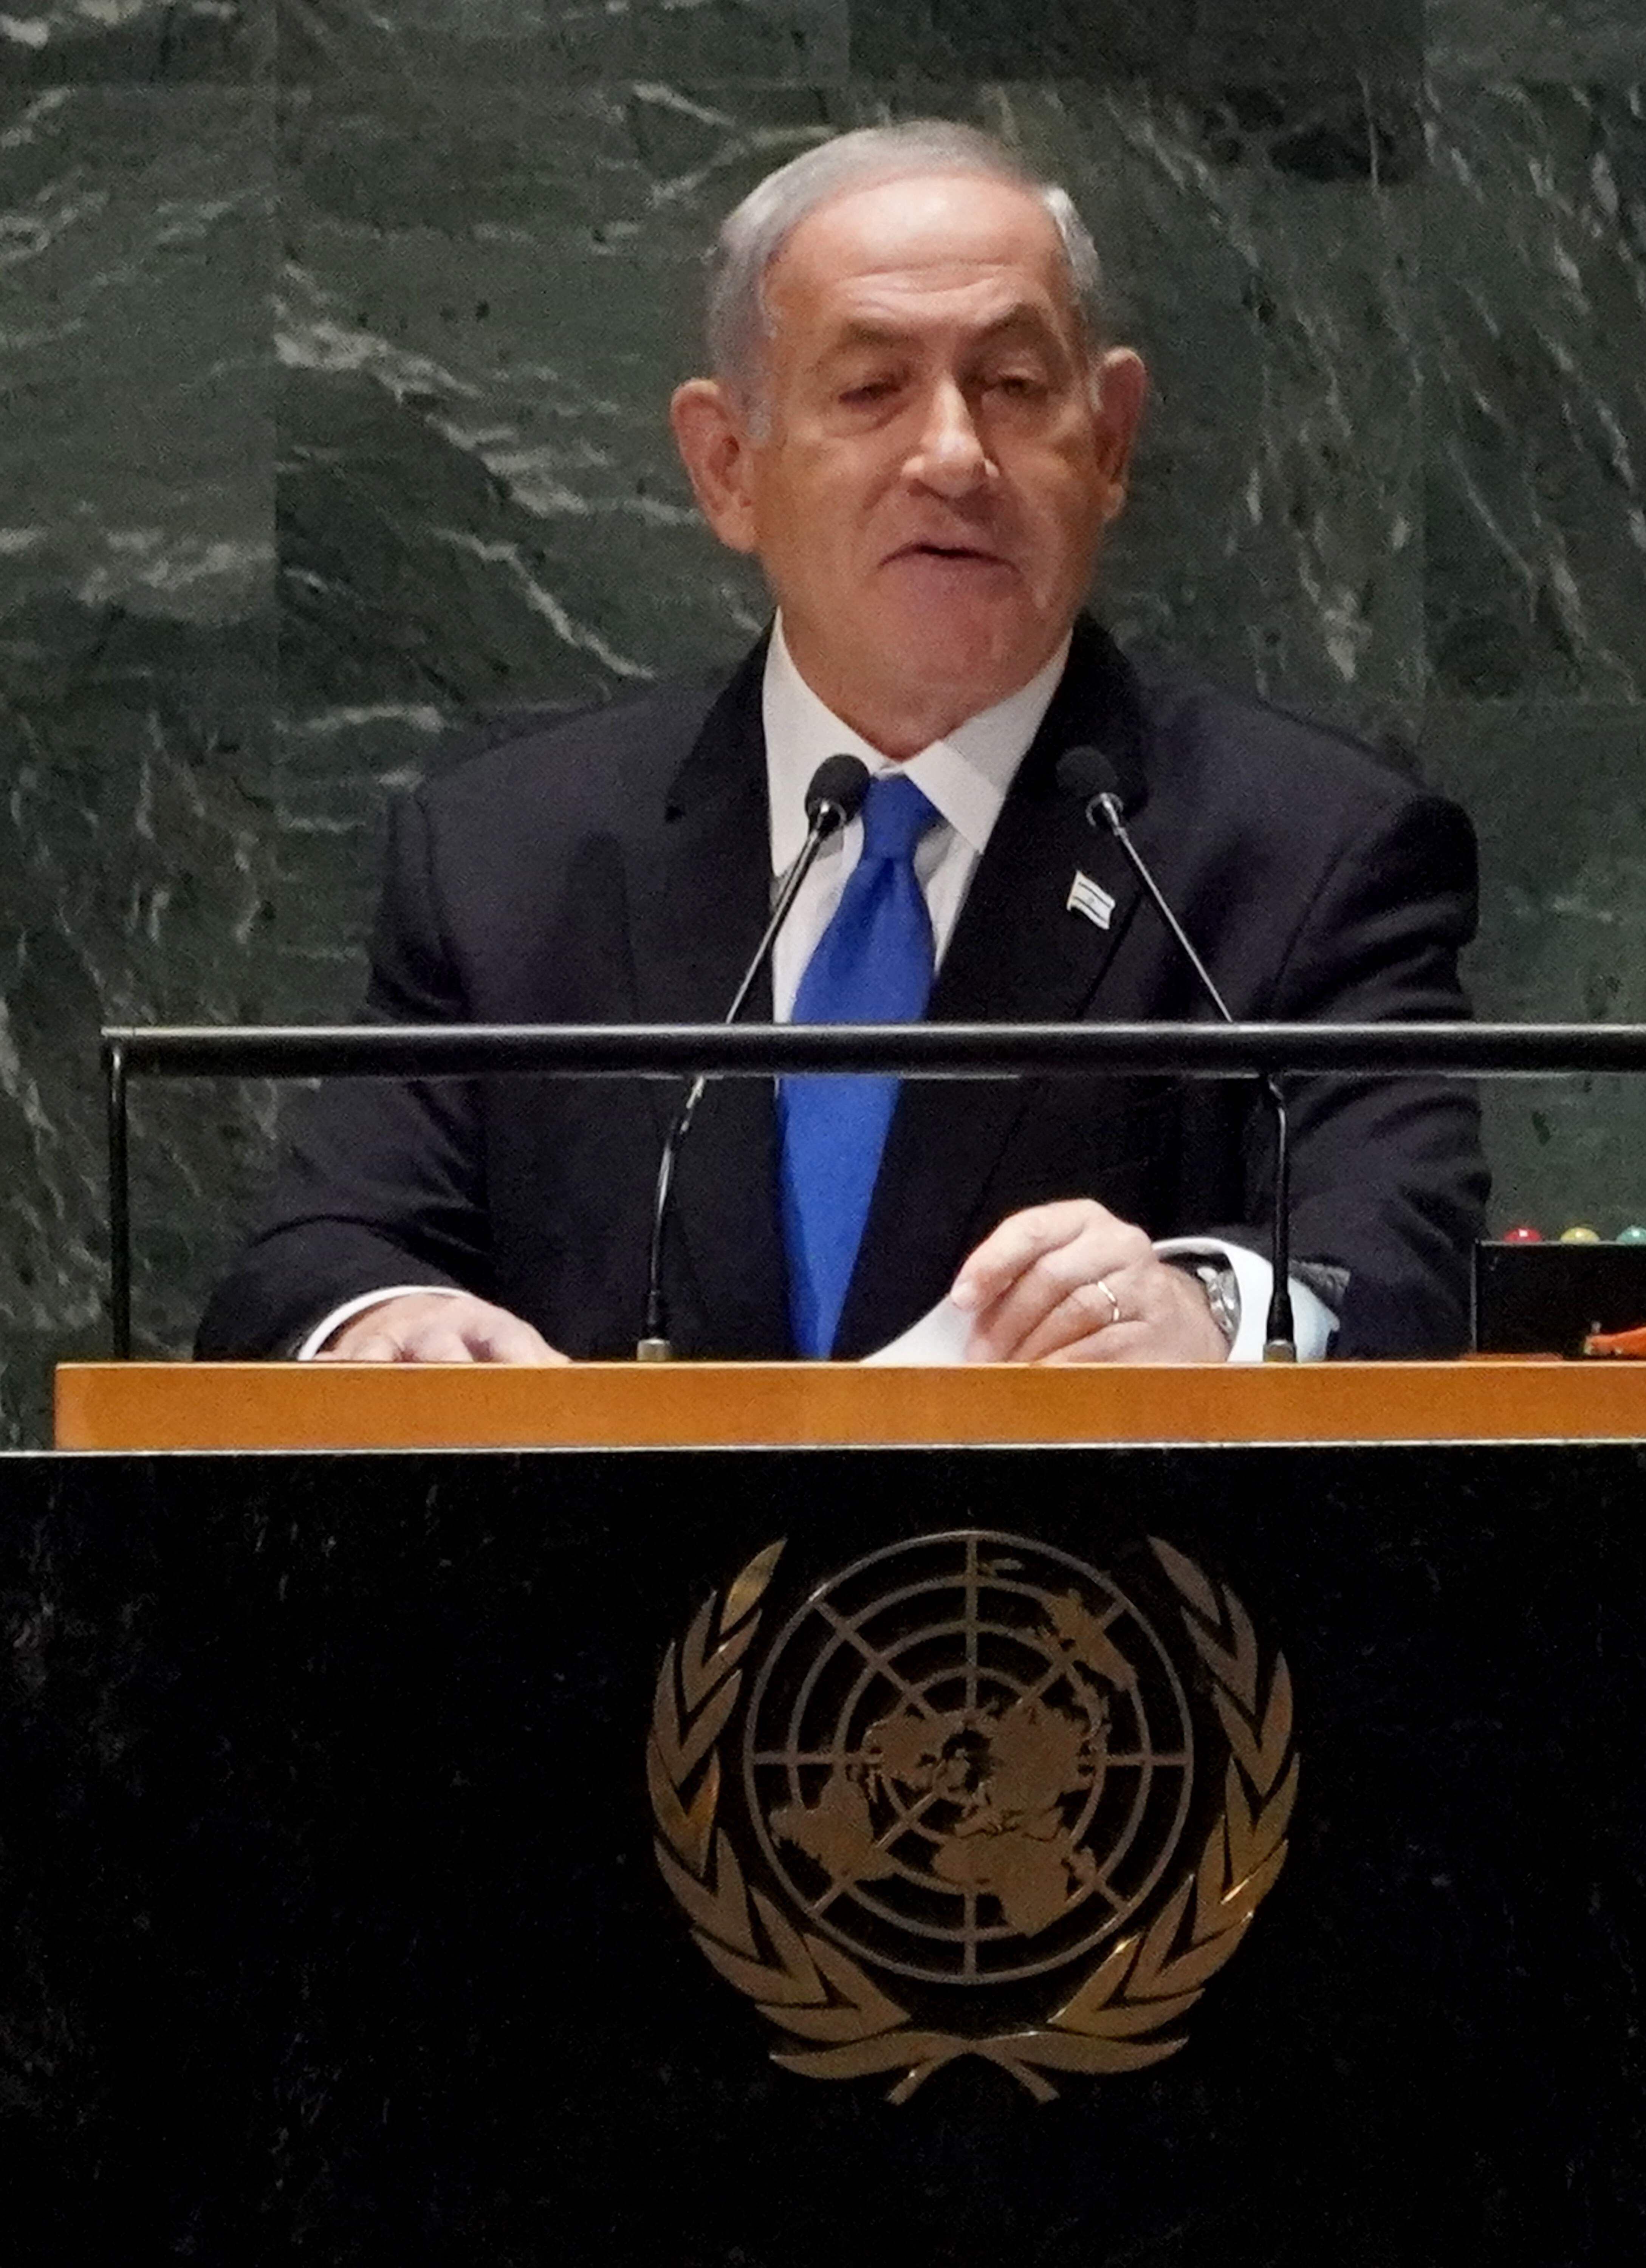 El primer ministro israelí Benjamin Netanyahu, se opone a un alto al fuego en Gaza debido a que su principal objetivo es 